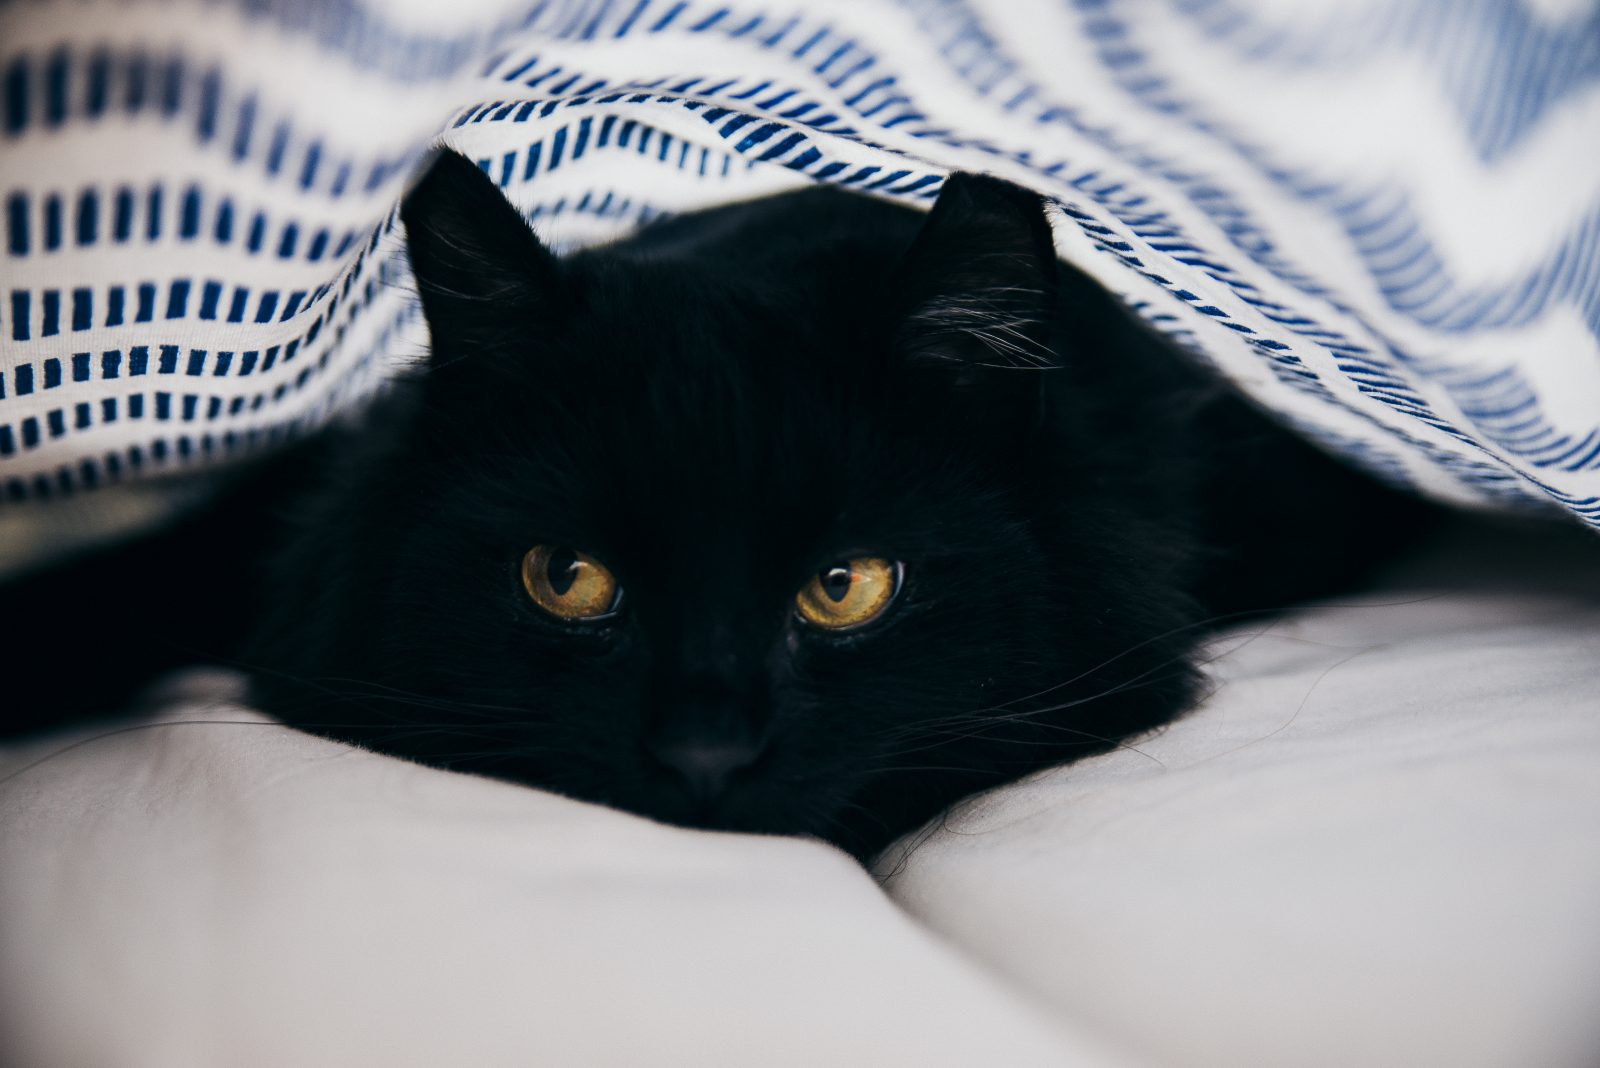 Supersticiones del gato negro Creencias de Buena y Mala Suerte